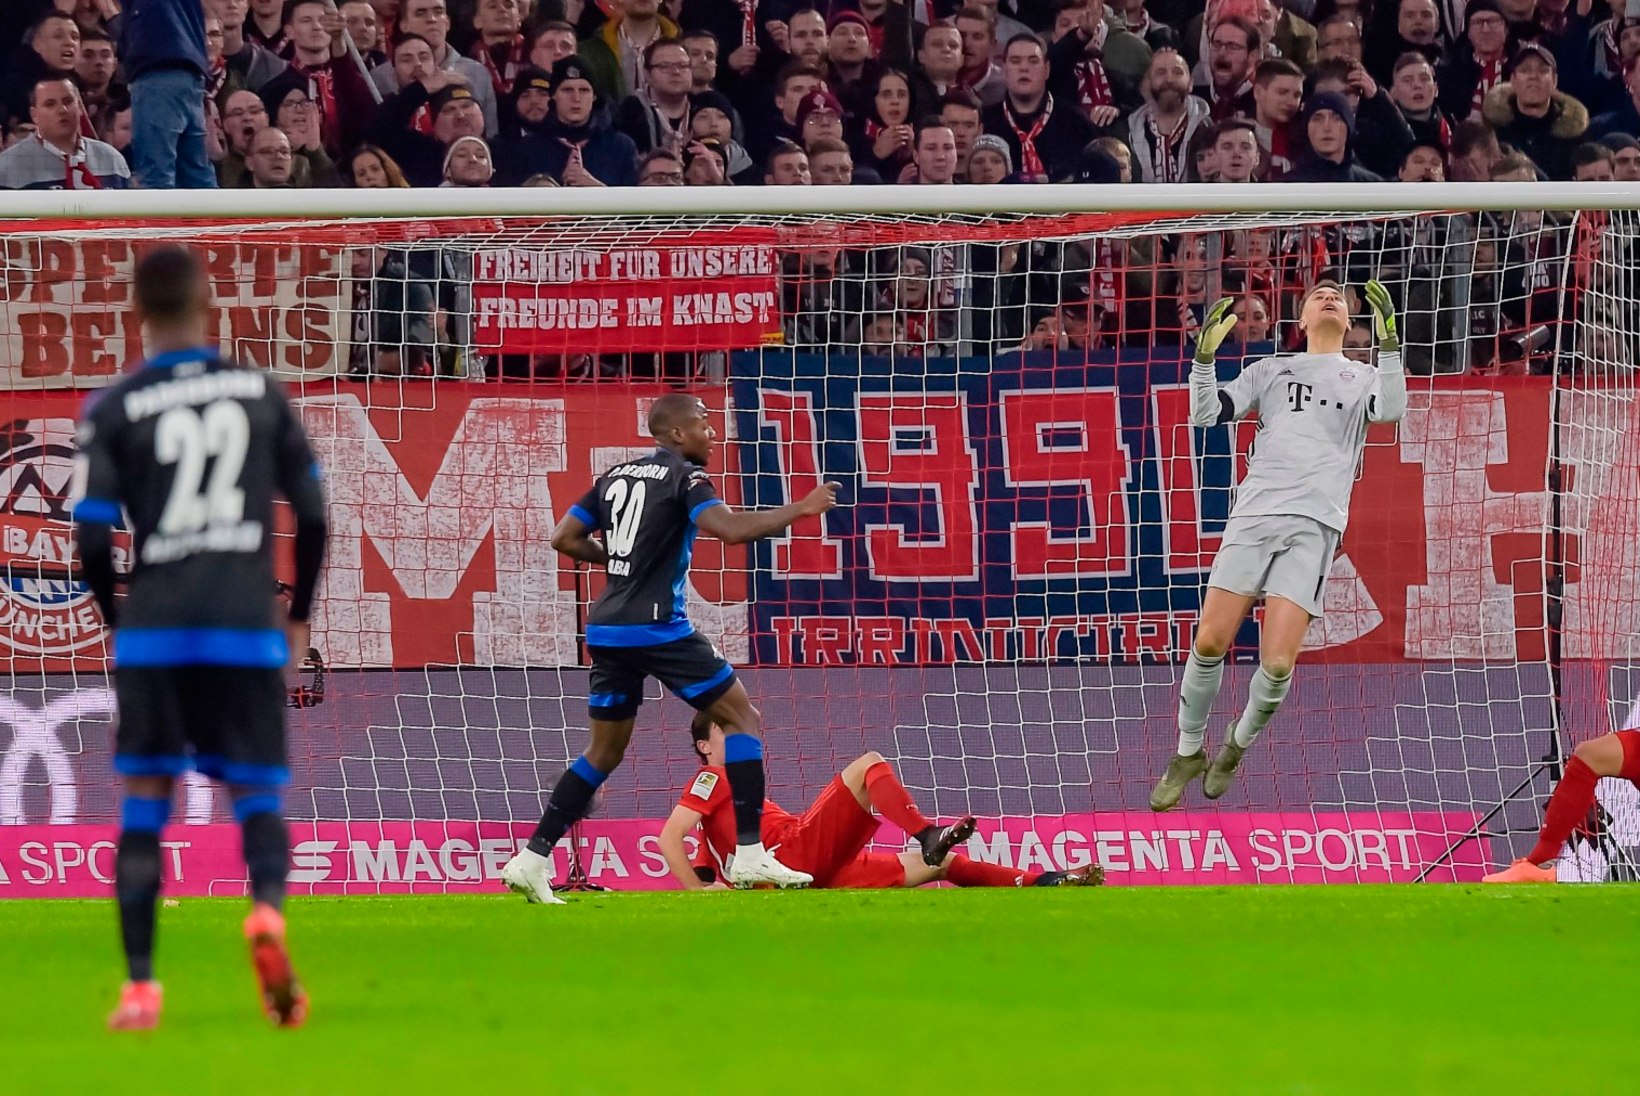 VIDEO | Neueri järjekordne seiklus päädis suure pirukaga, kuid Lewandowski päästis ikkagi päeva